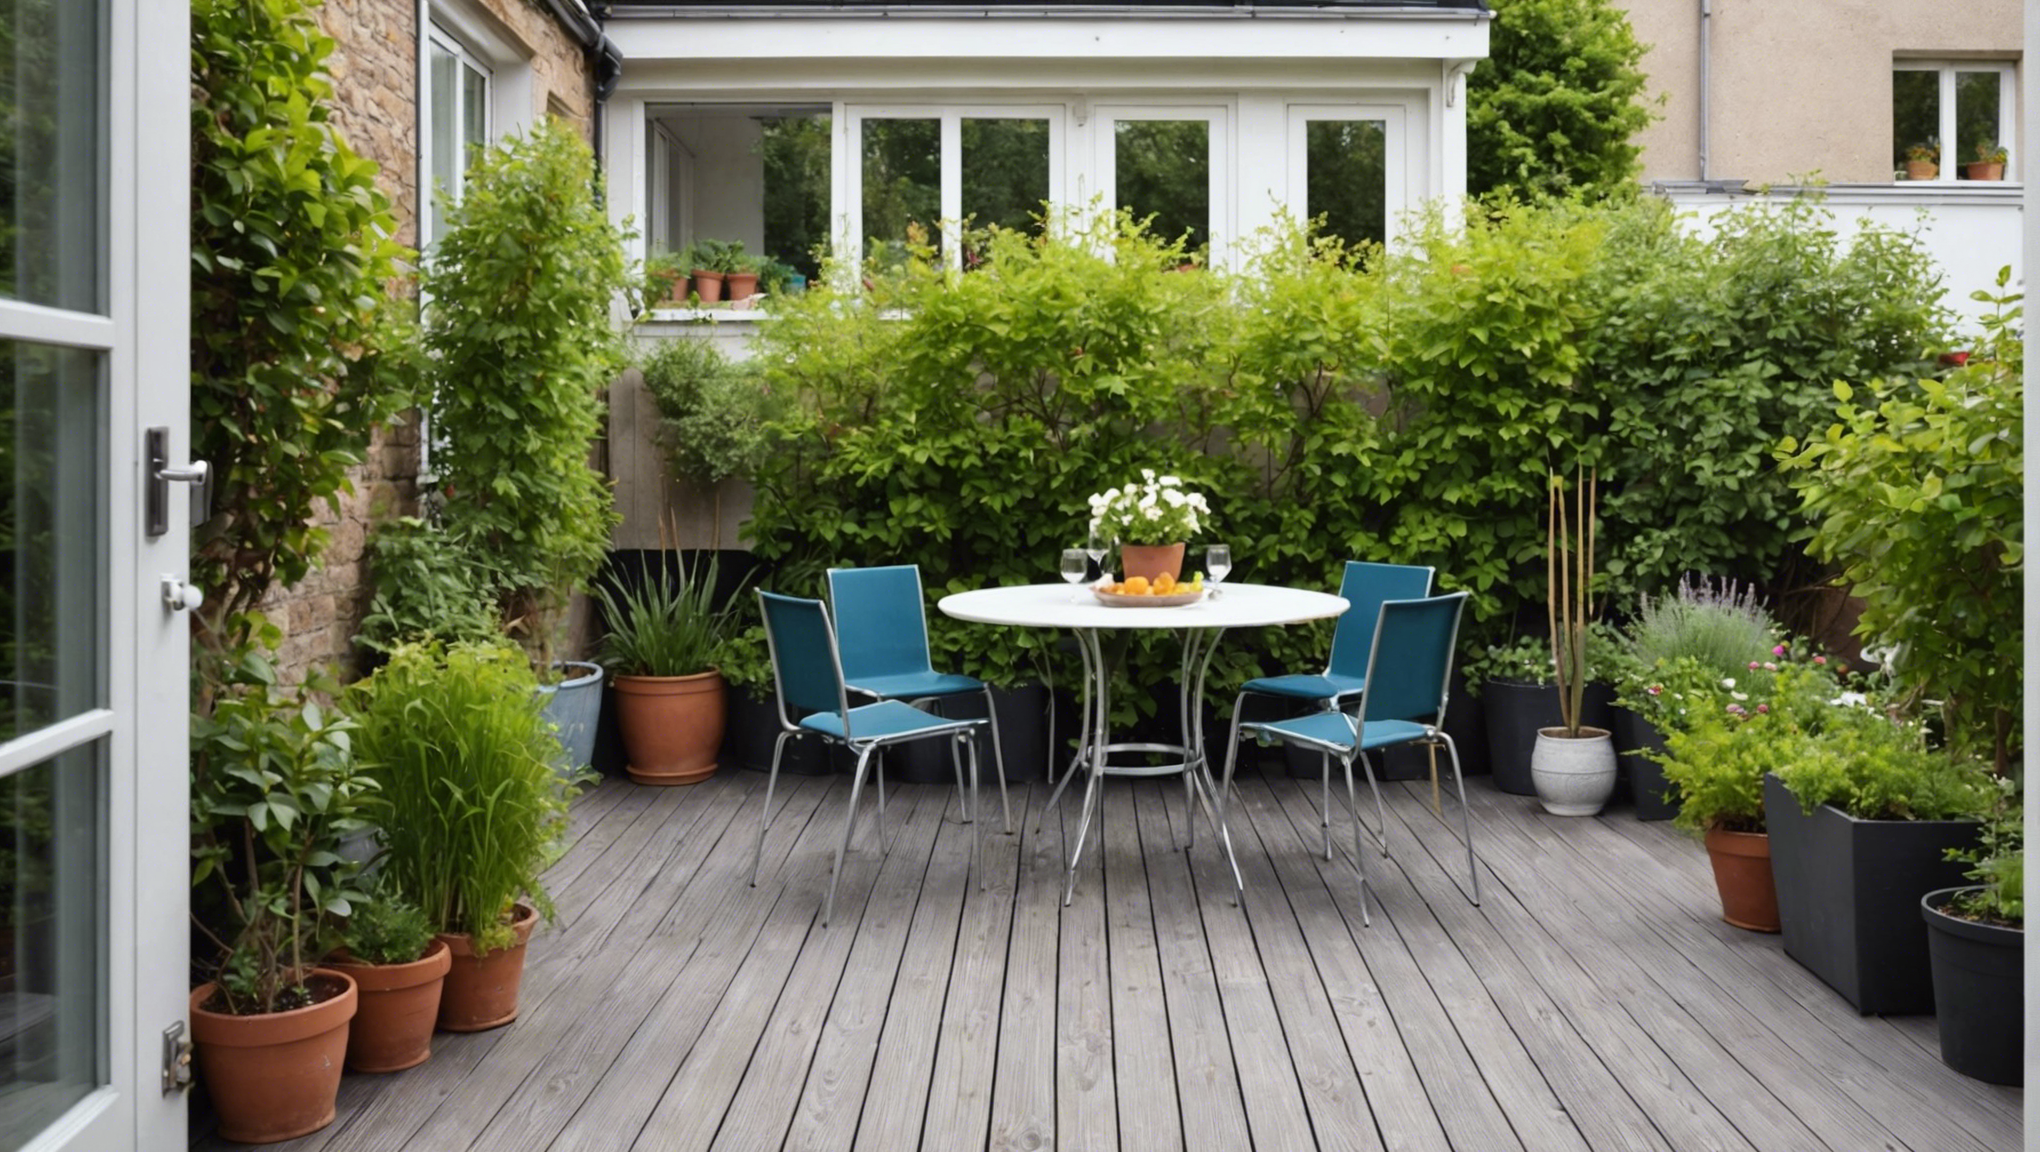 découvrez comment aménager un jardin devant sa maison avec une terrasse pour créer un espace extérieur agréable et convivial. conseils et idées d'aménagement pour un jardin accueillant et esthétique.